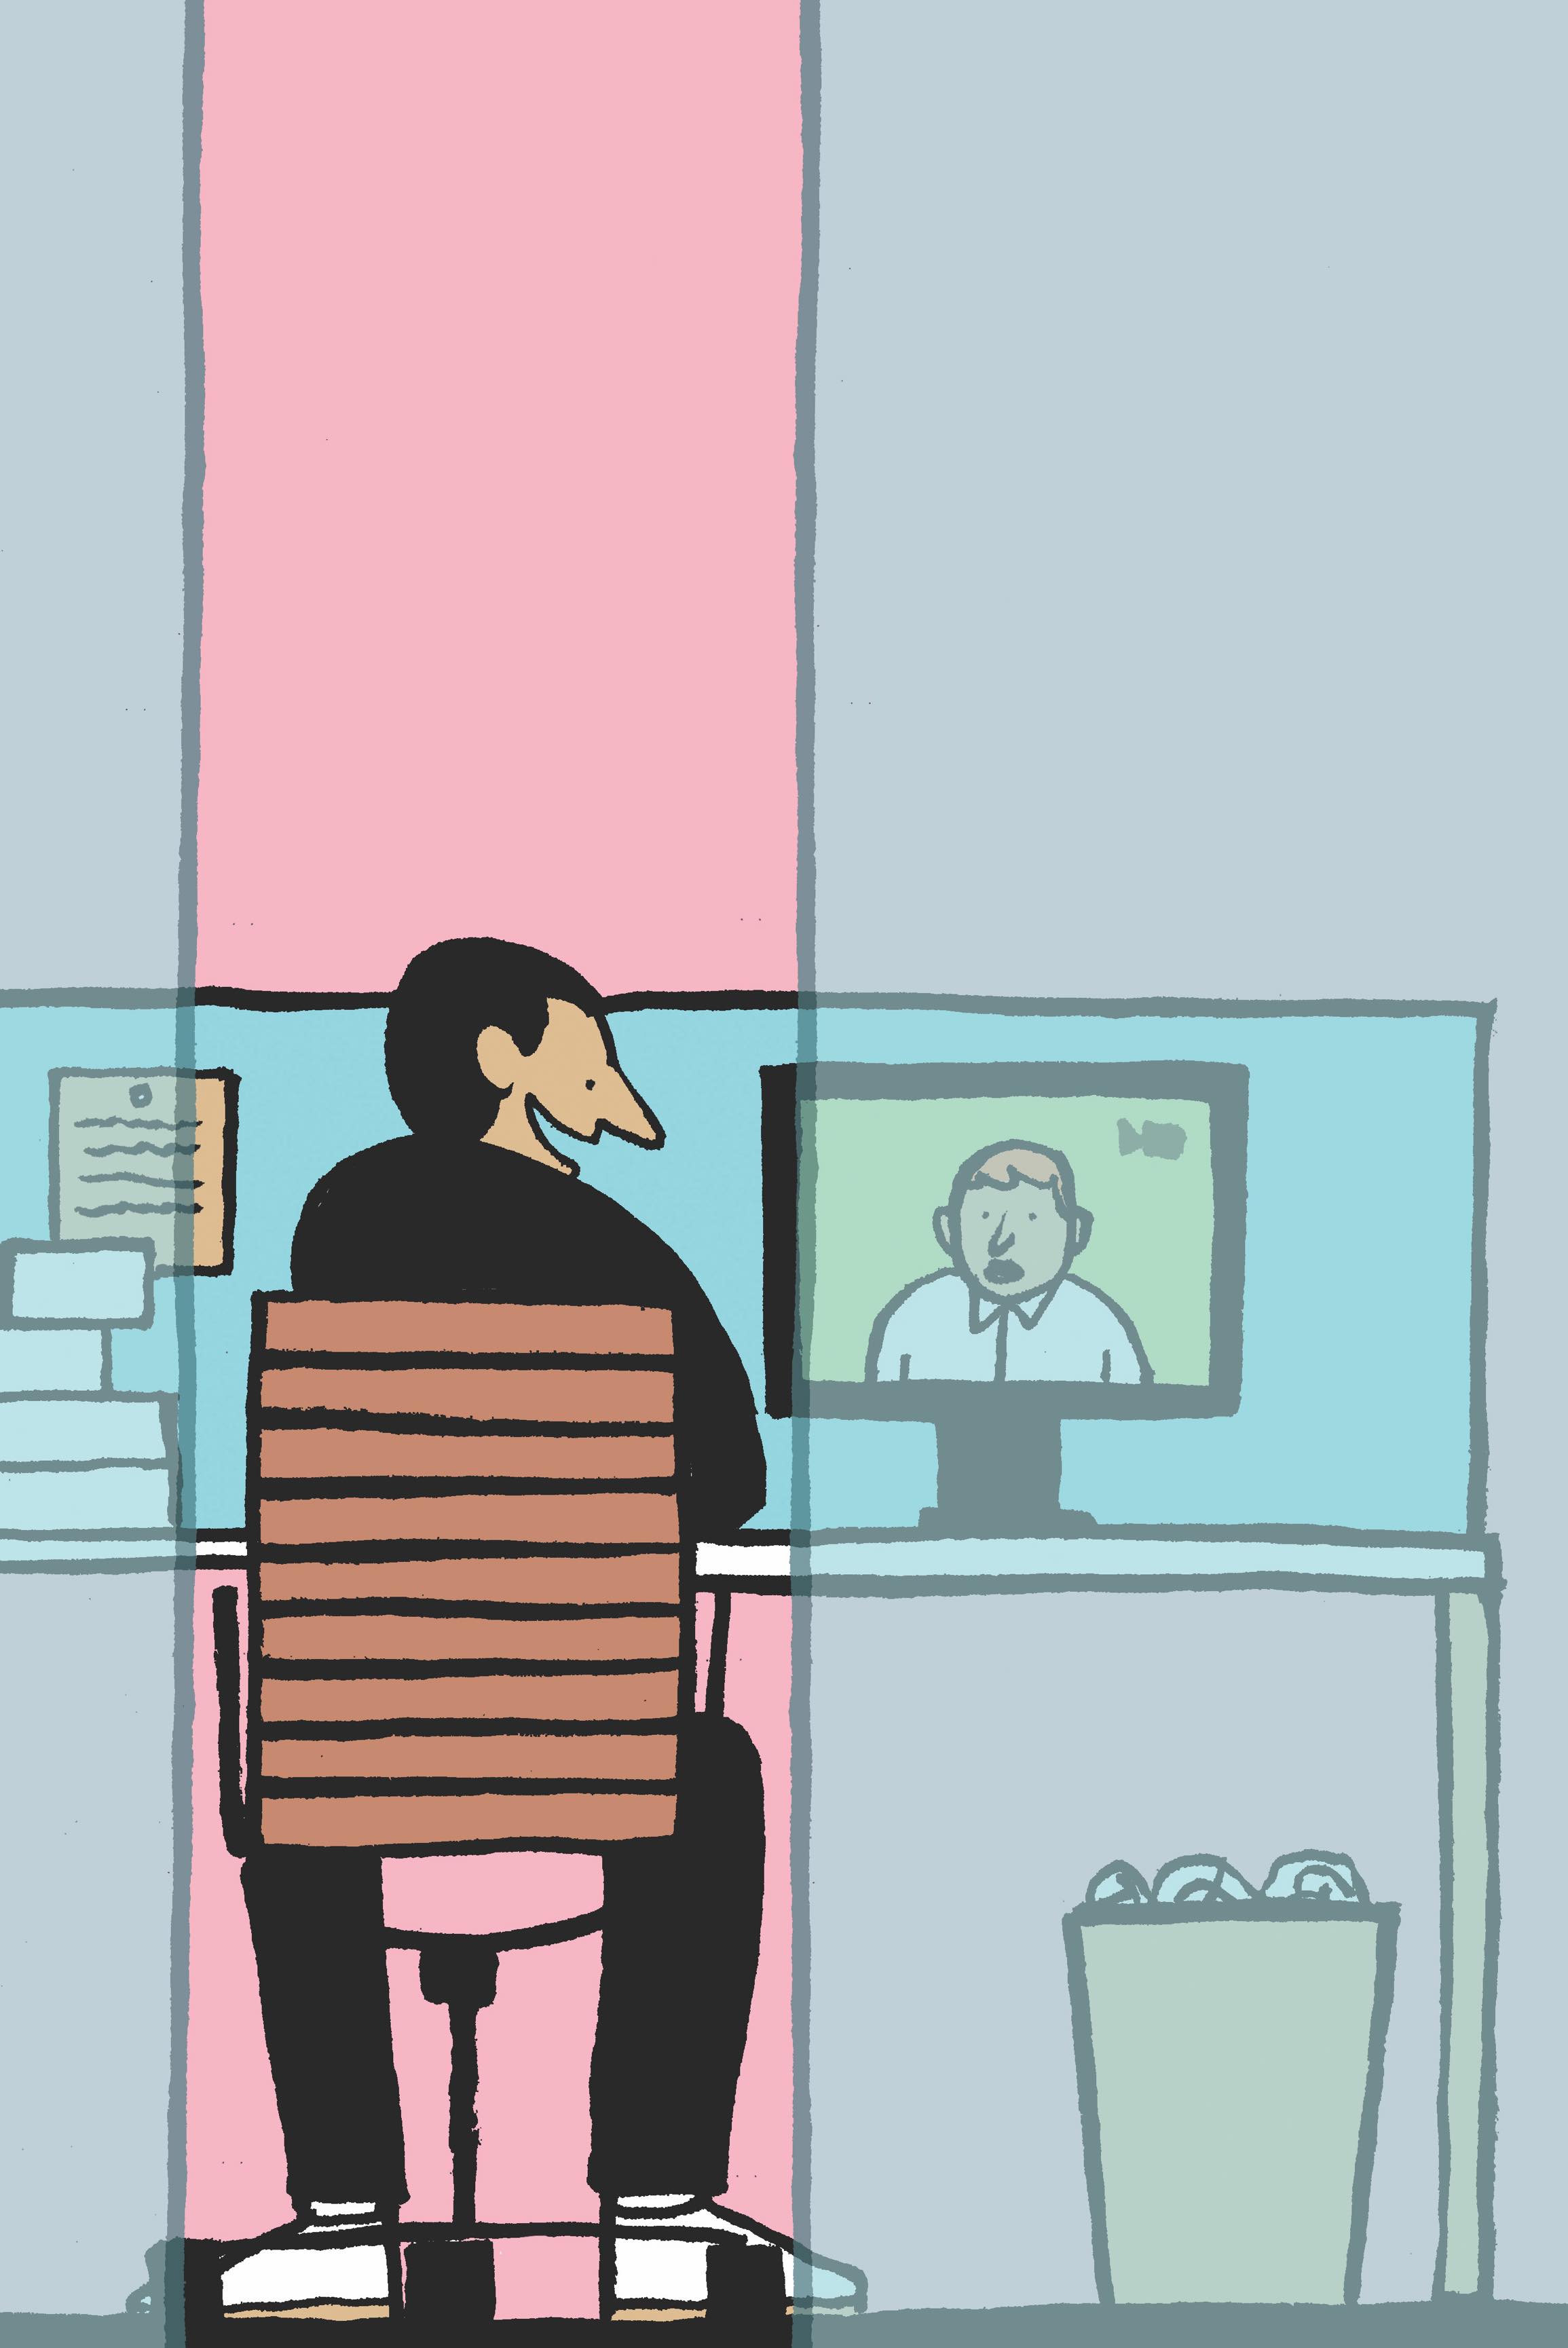 Eine Karikatur eines Mannes, der auf einen Kollegen einwirkt, dessen Gesicht auf seinem Computerbildschirm erscheint.